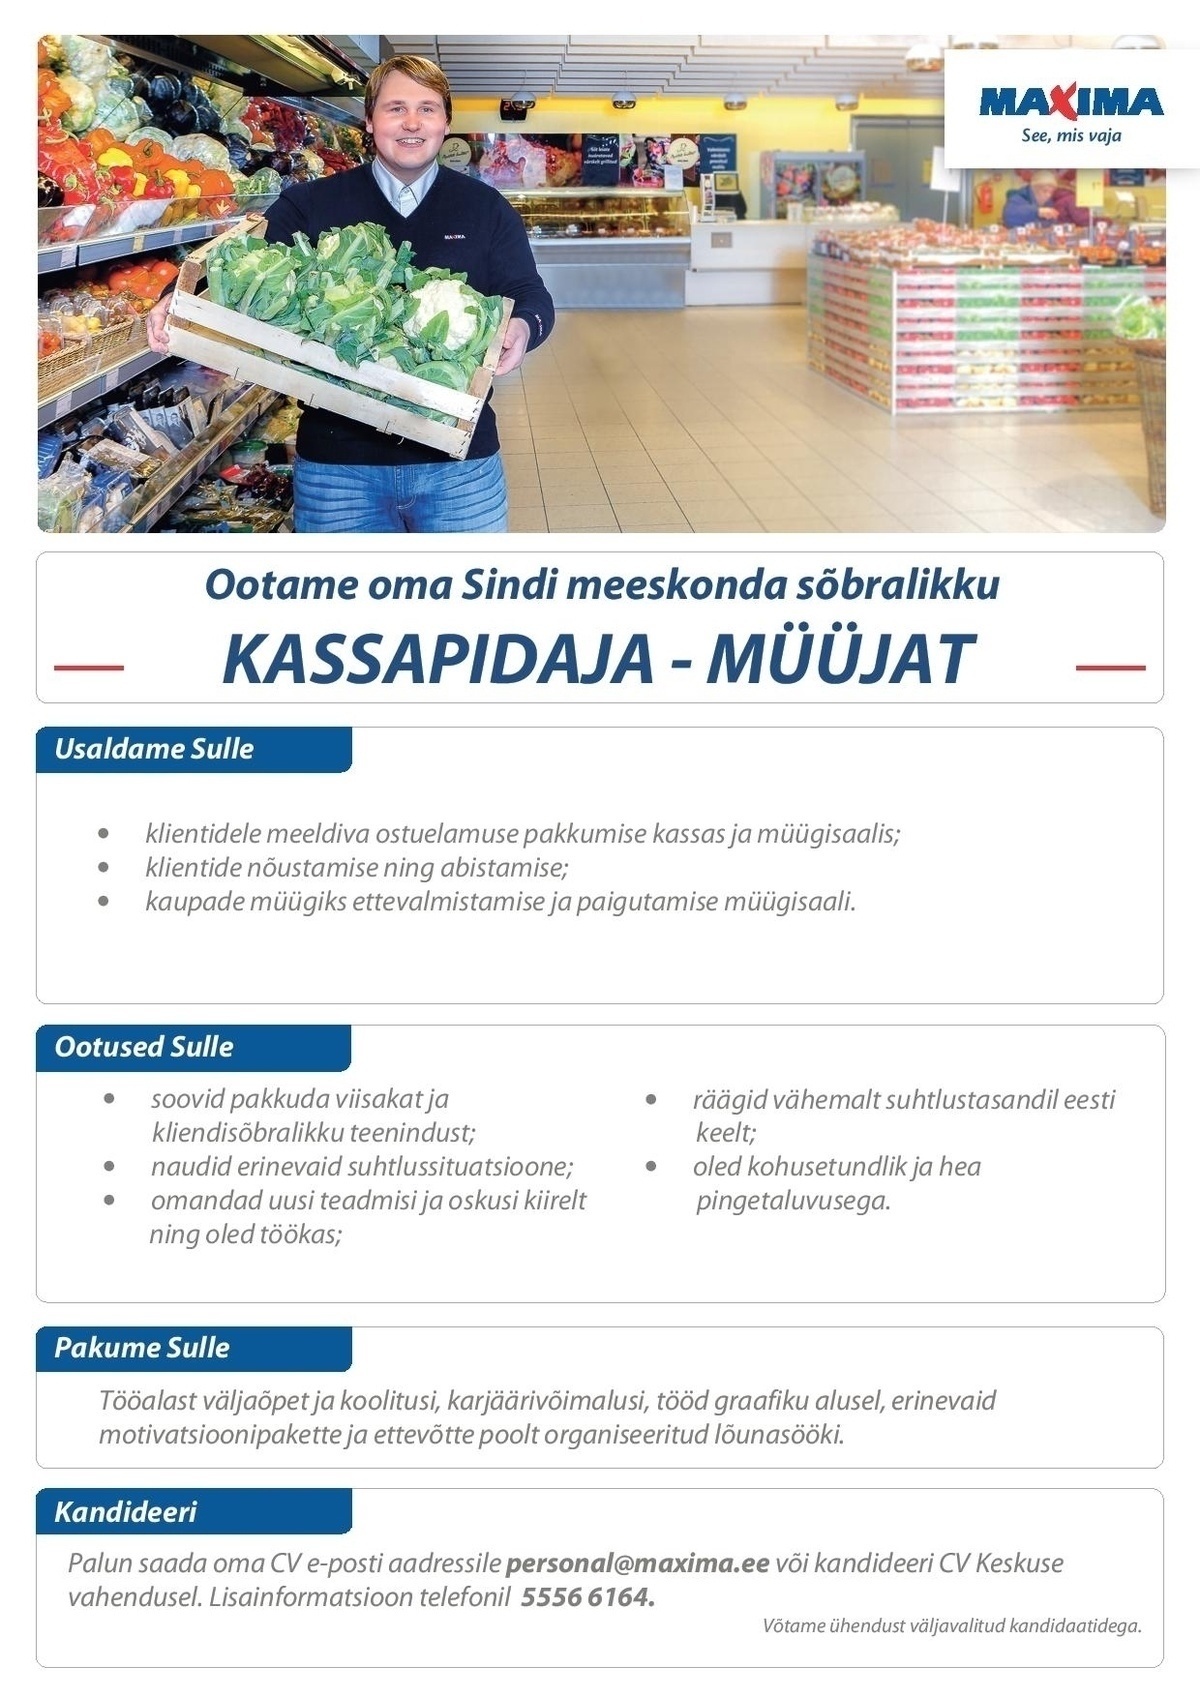 Maxima Eesti OÜ Kassapidaja-müüja Sindi Maximas